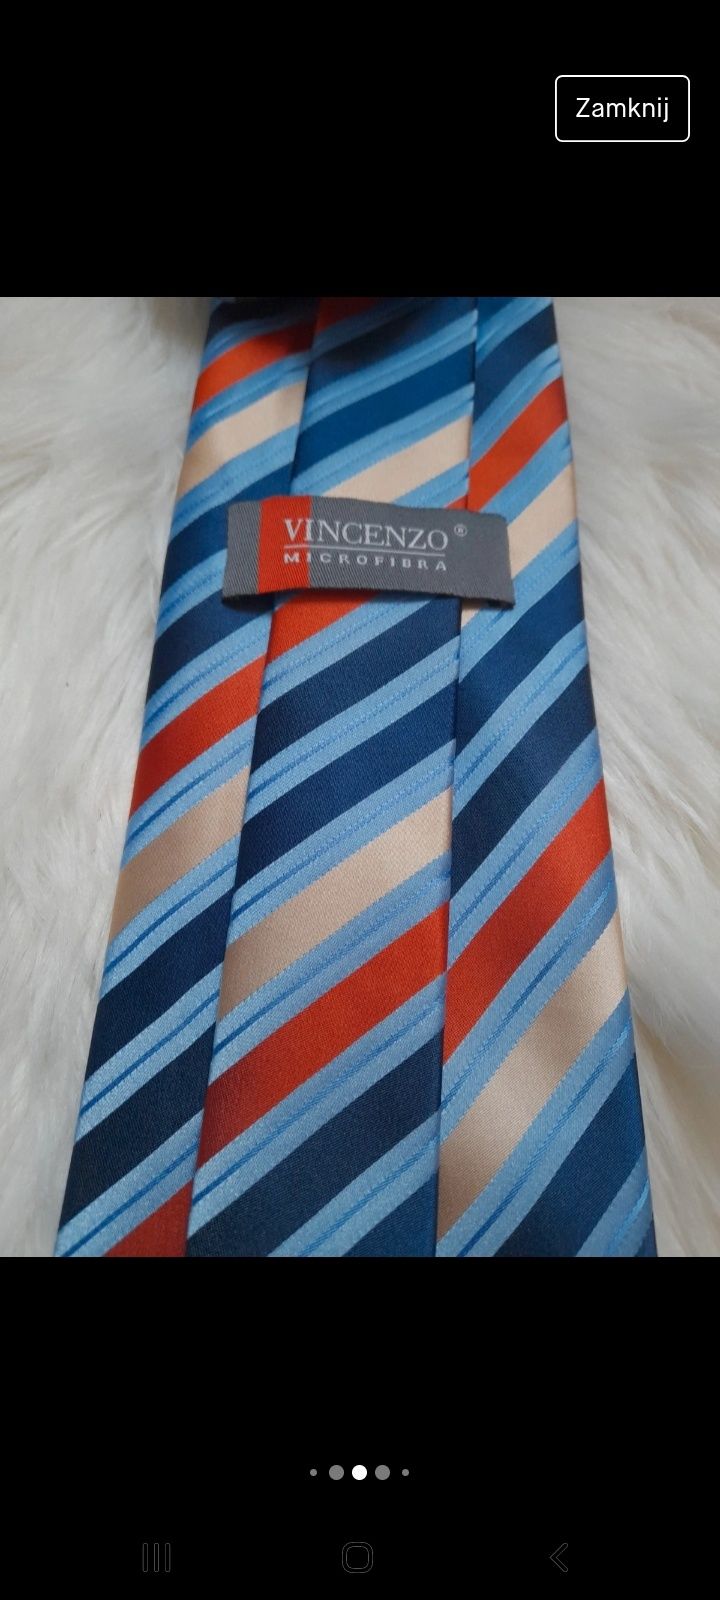 Nowy niebieski krawat męski w pasy wielobarwny modny polyester stylowy